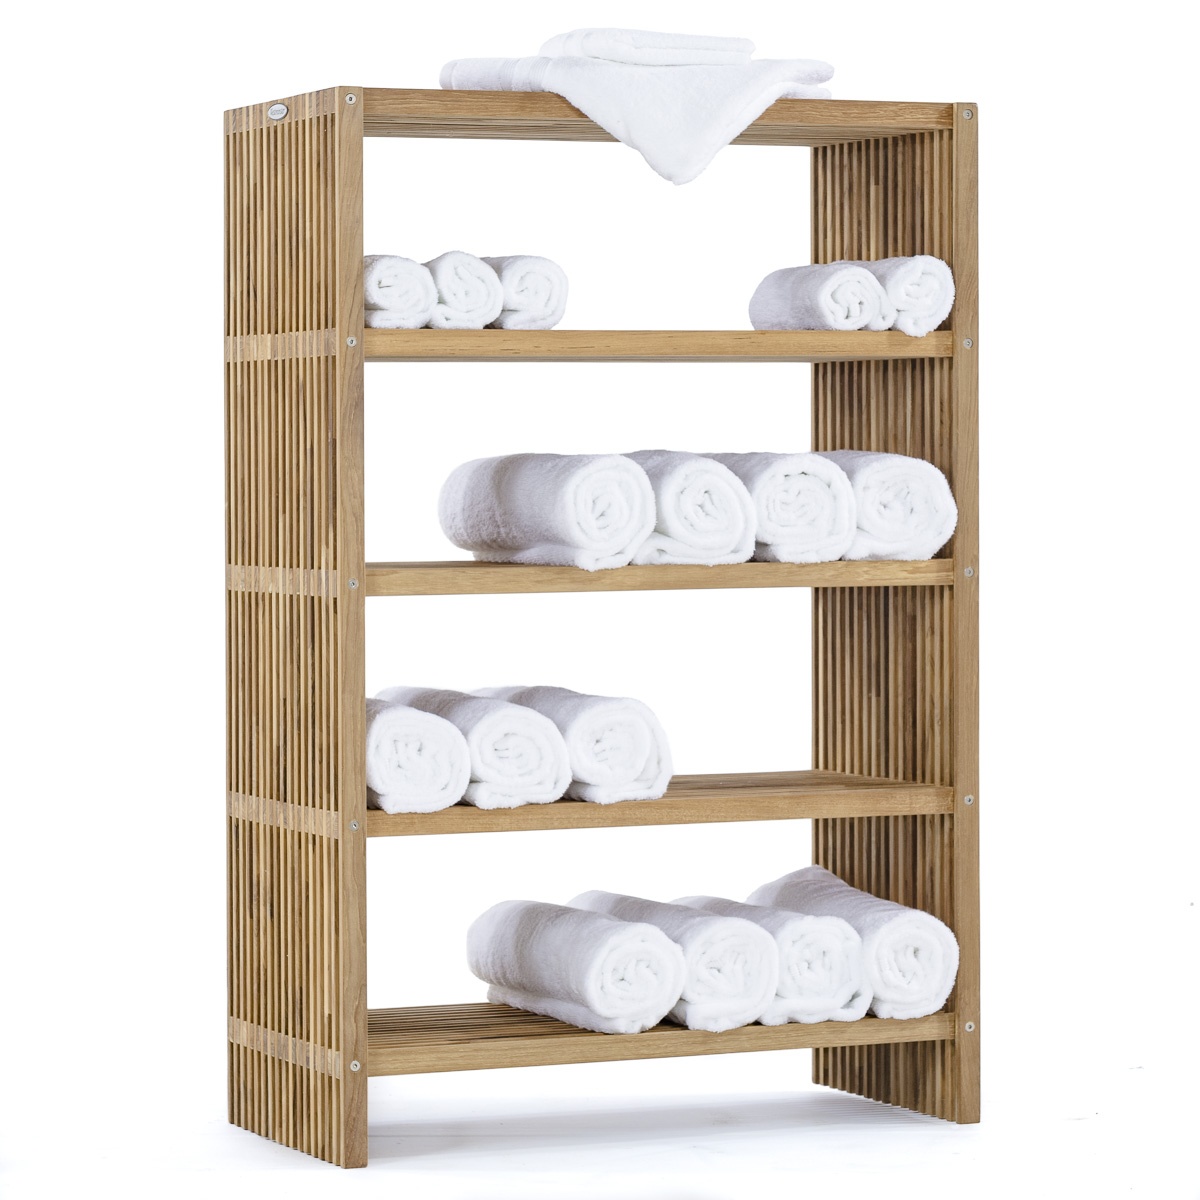 Купить полку для полотенец. Деревянный стеллаж для полотенец. Этажерка для полотенец. Полка для полотенец деревянная. Стеллаж для полотенец в ванную комнату.